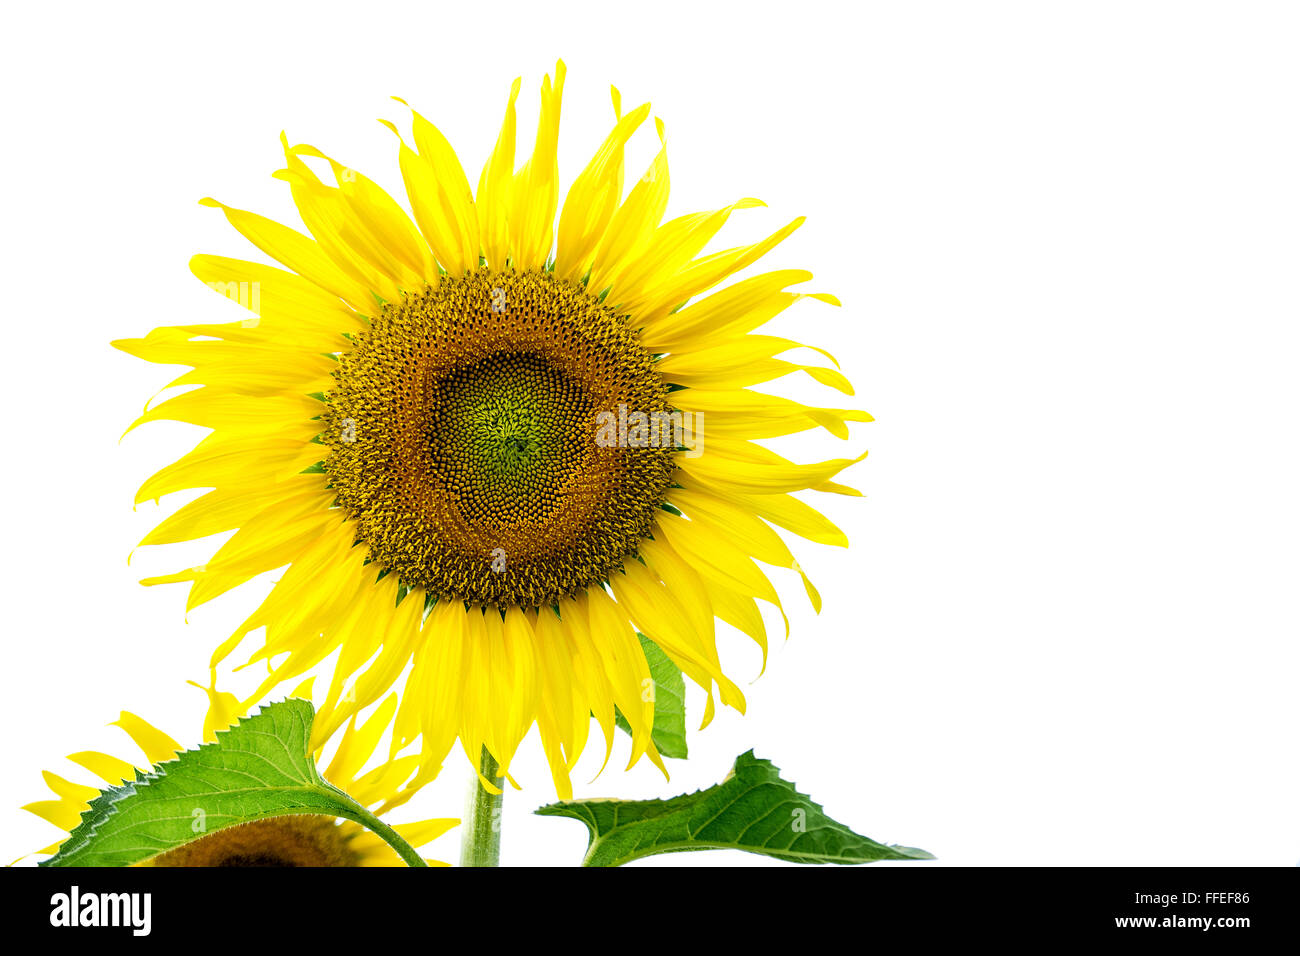 Beautiful big sunflower isolated on white background. Stock Photo